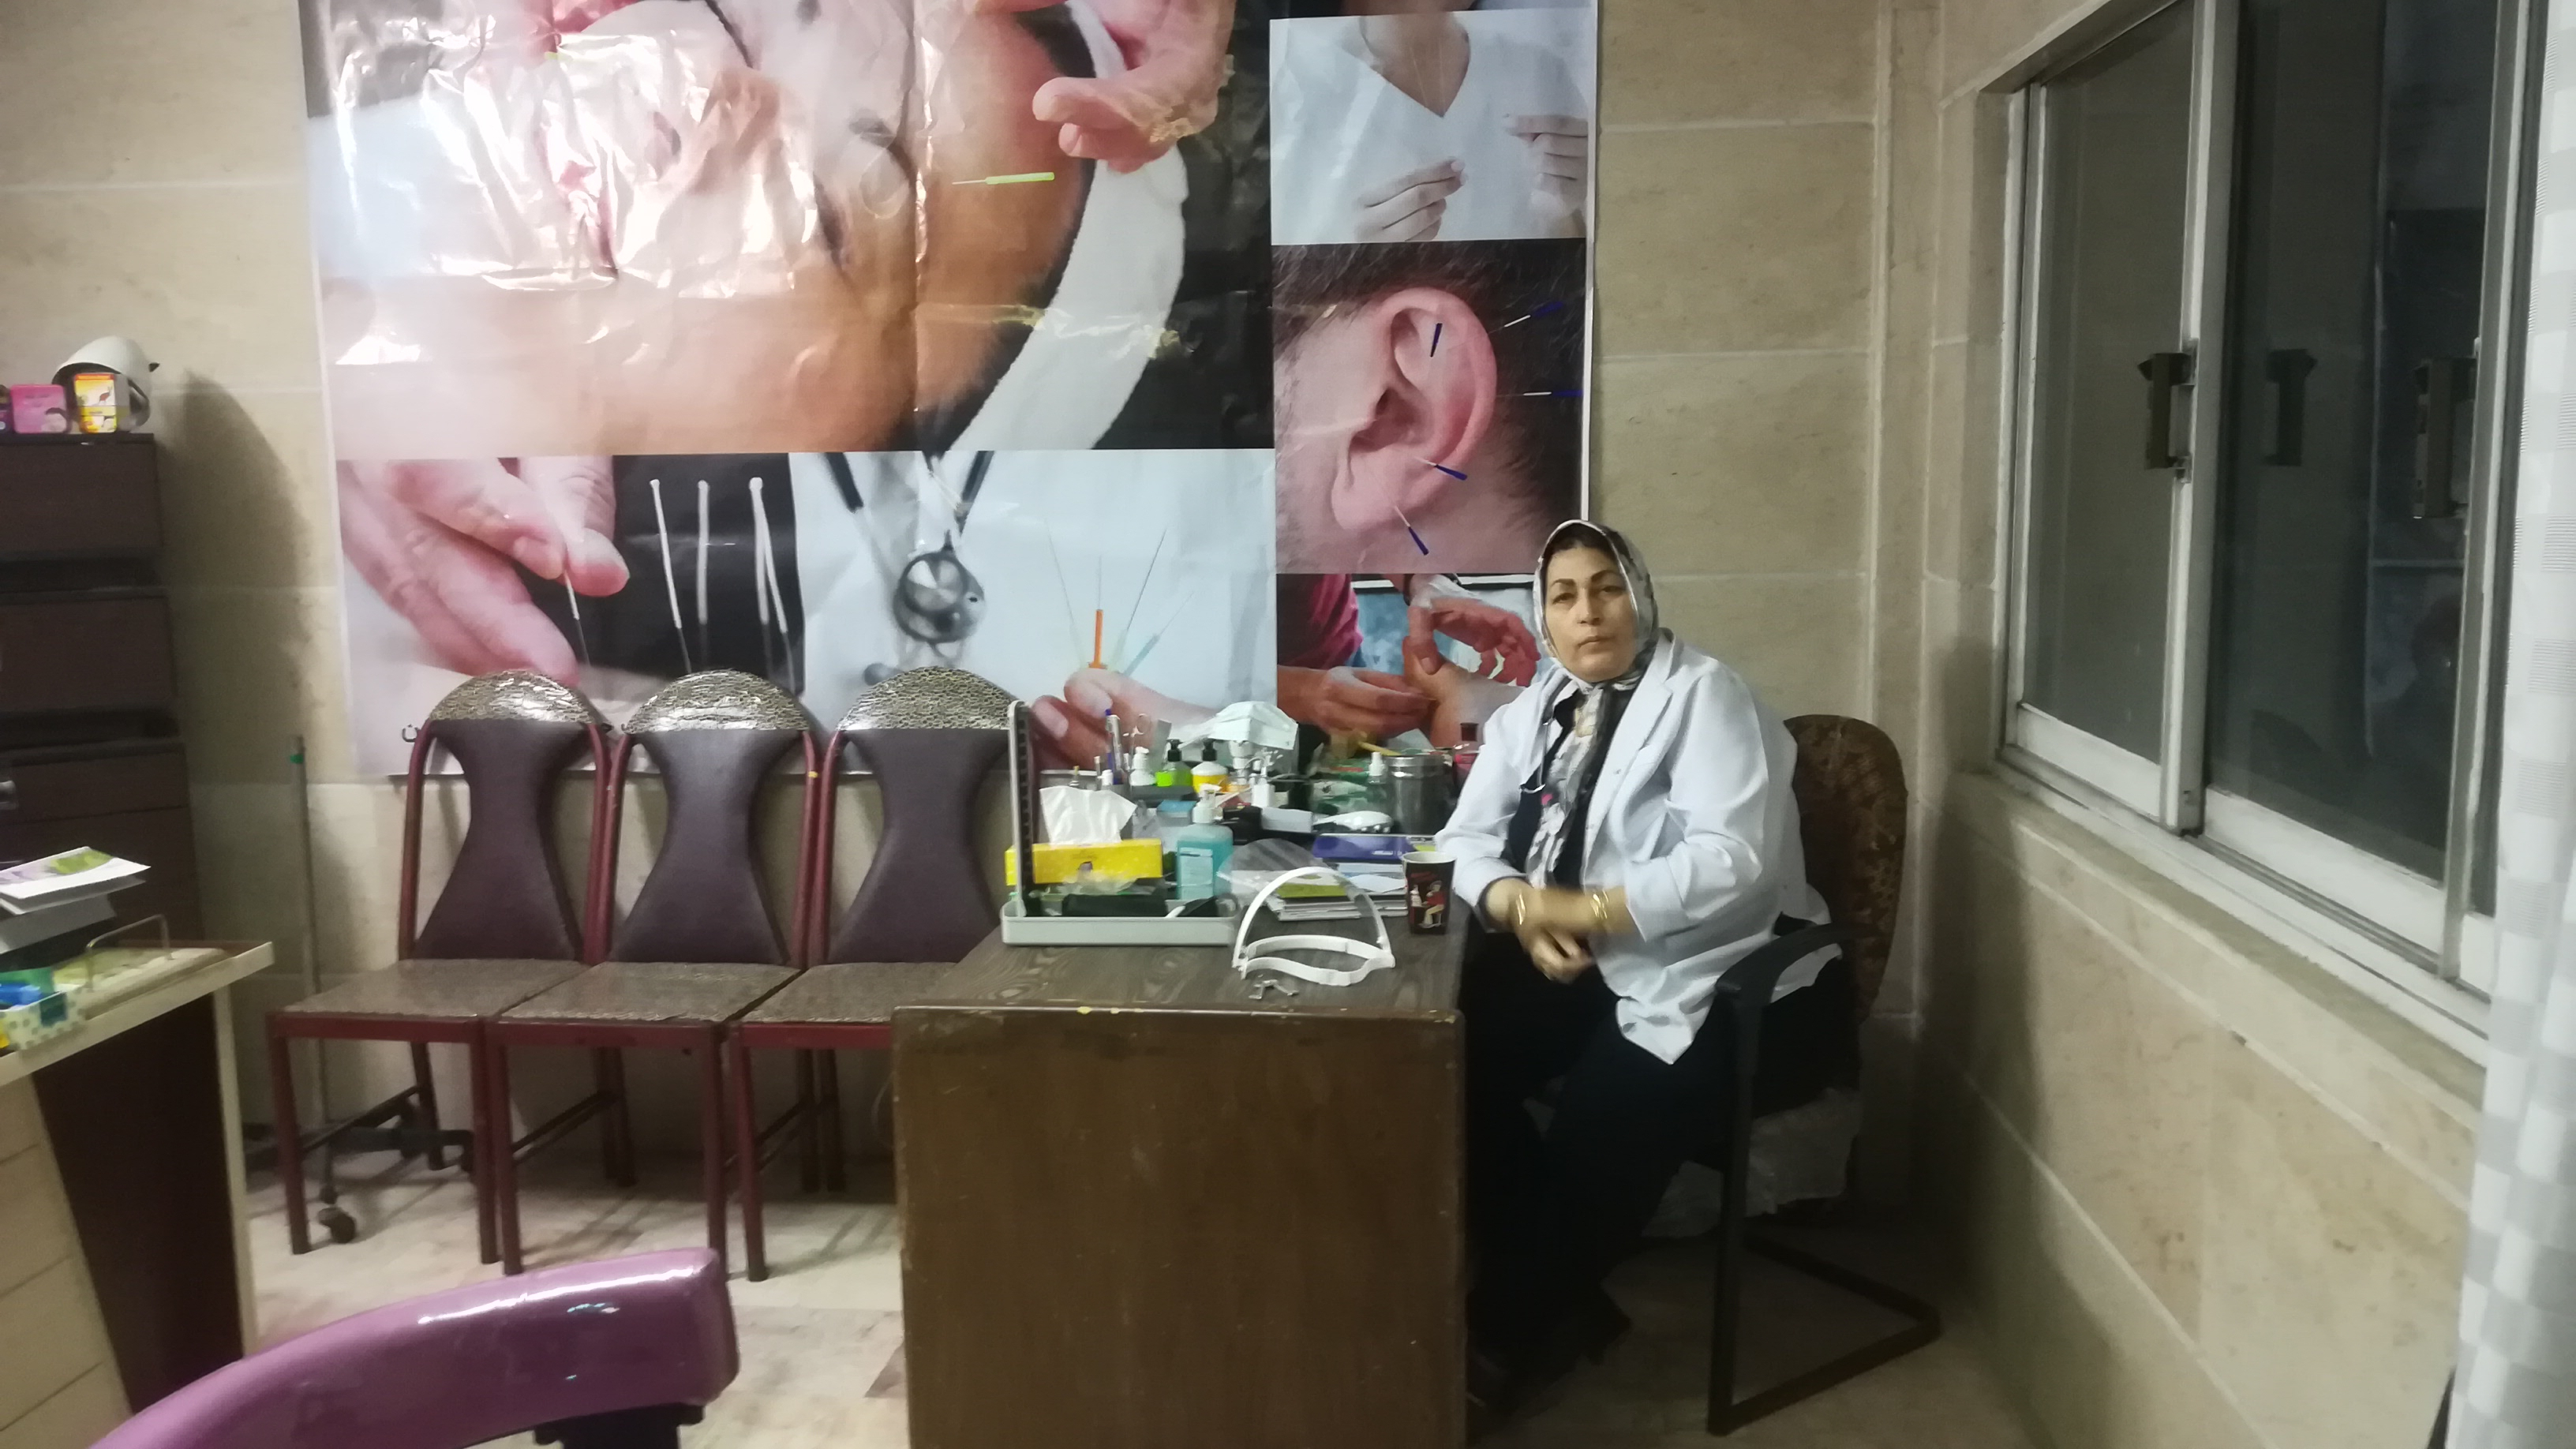 کلینیک زیبایی و طب سوزنی دکتر آزیتا قبادی